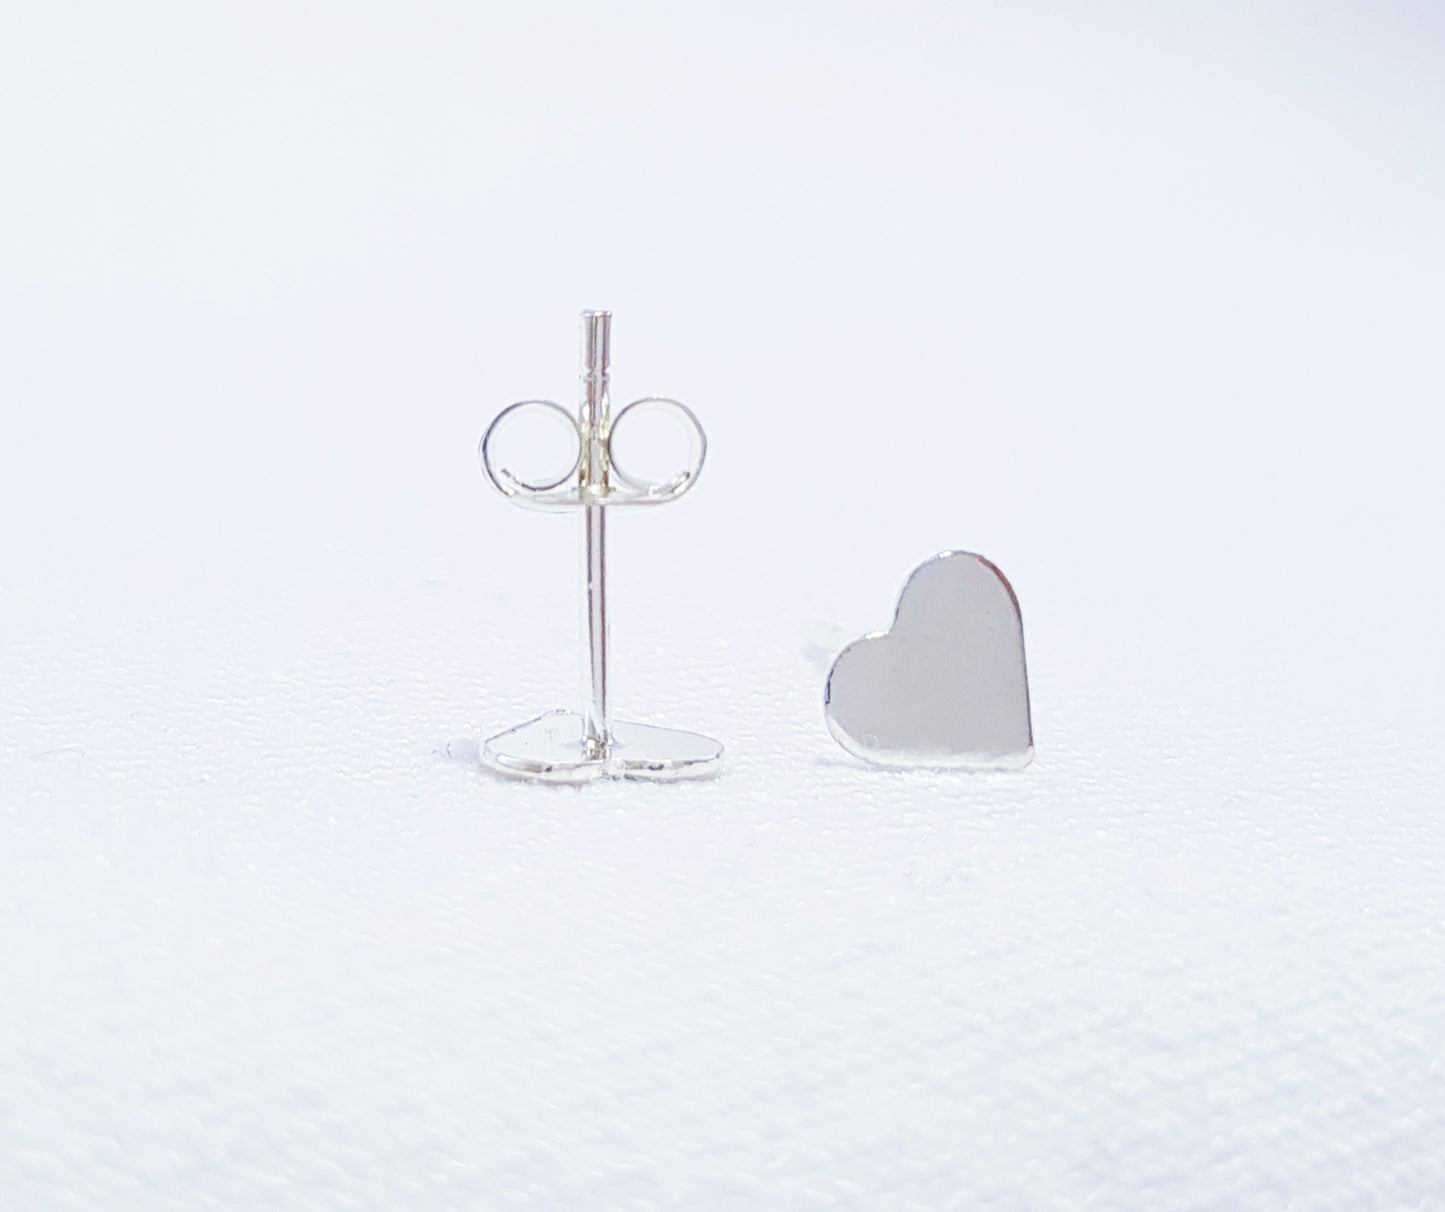 Sterling Silver Flat Heart Stud Earrings